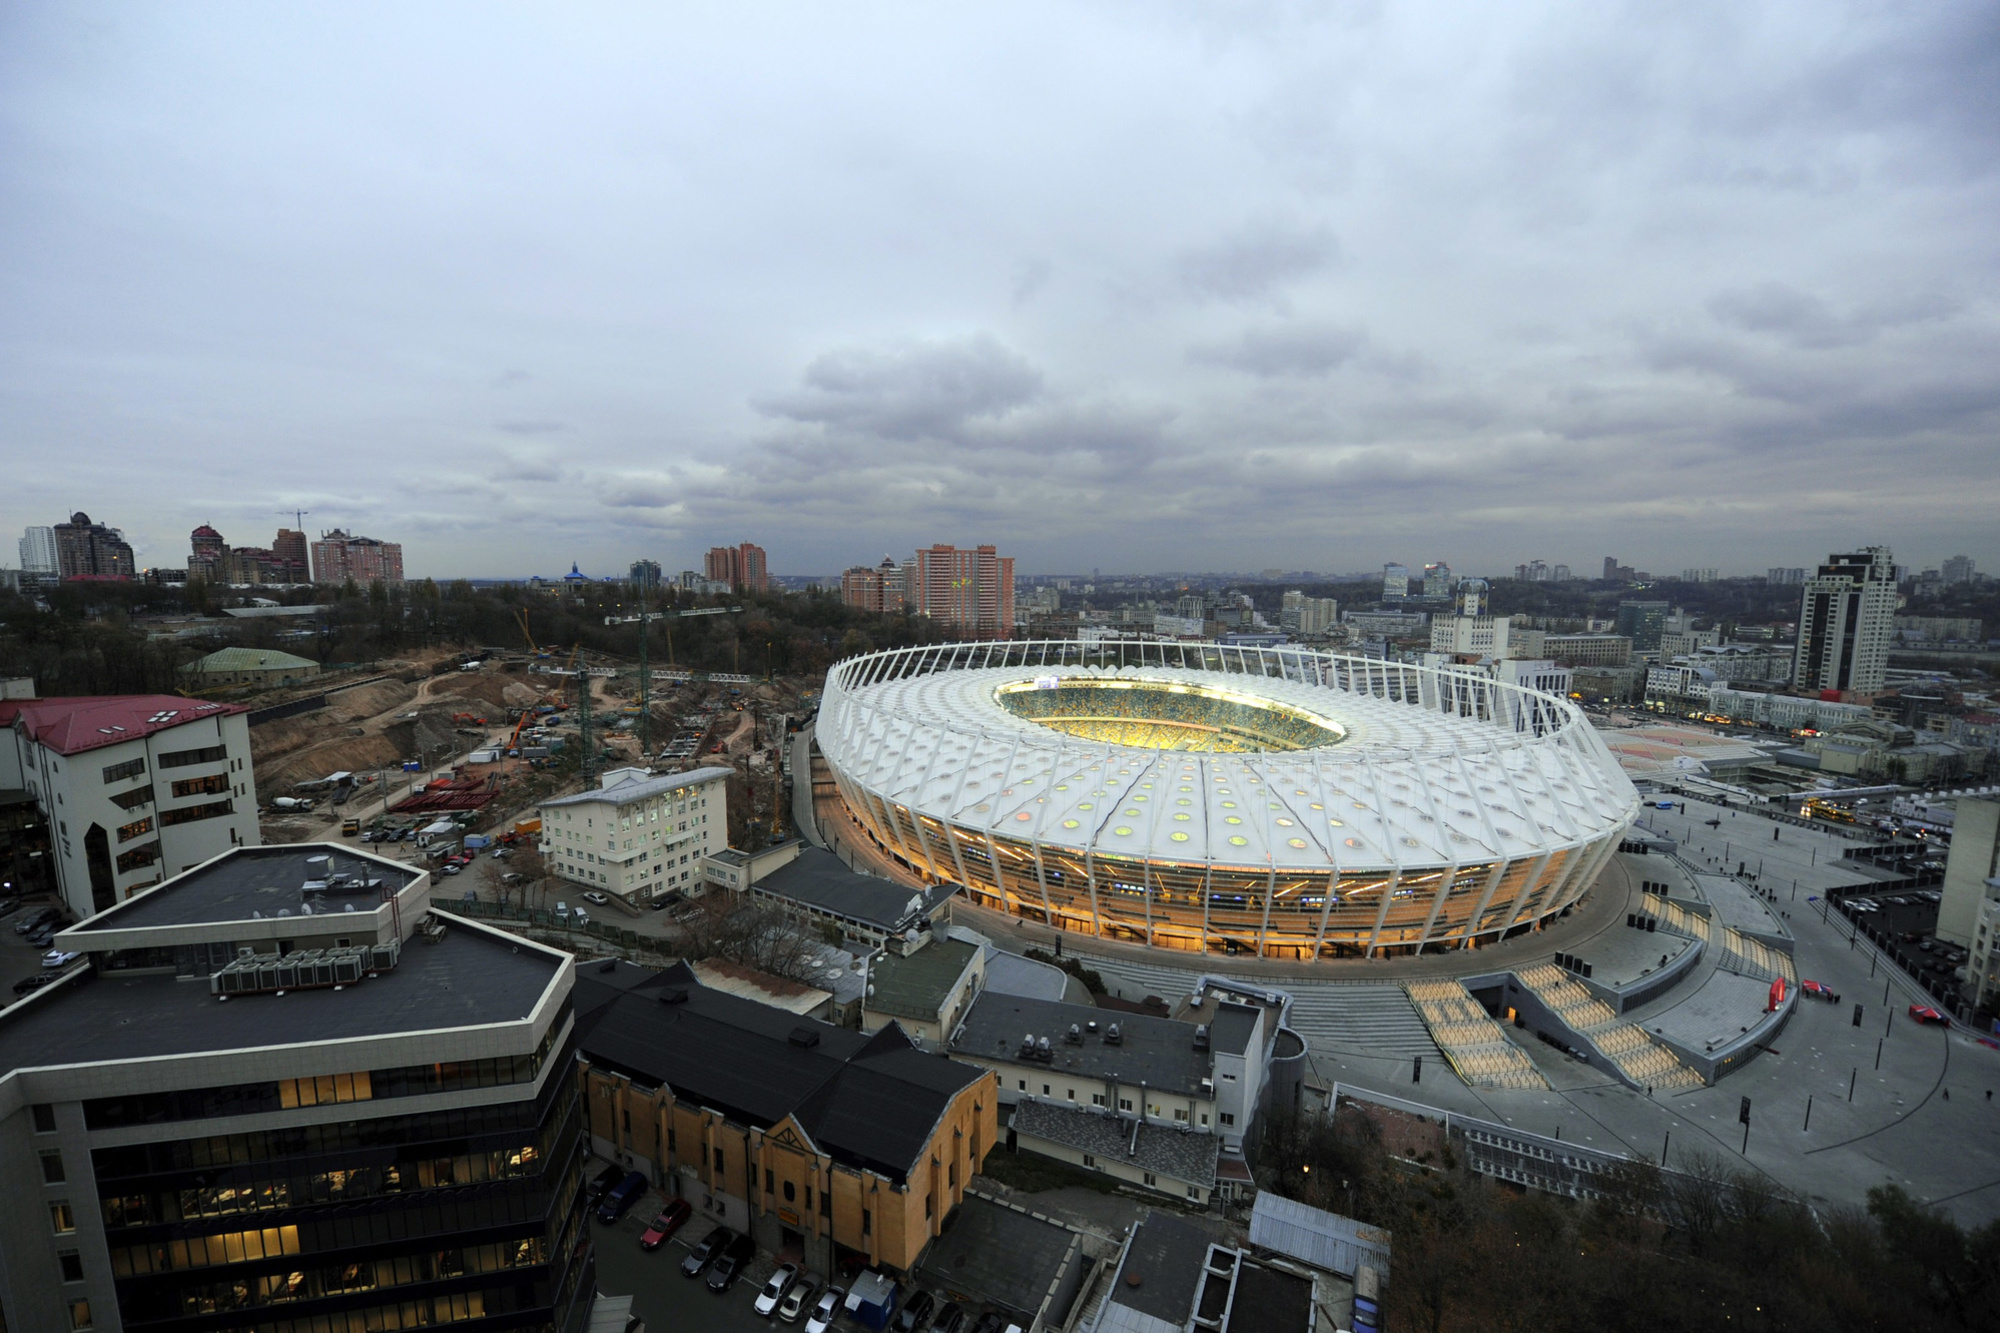 Le stade de Kiev où se disputait voici bientôt dix ans la finale de l'Euro 2012 organisé conjointement par la Pologne et l'Ukraine., belga